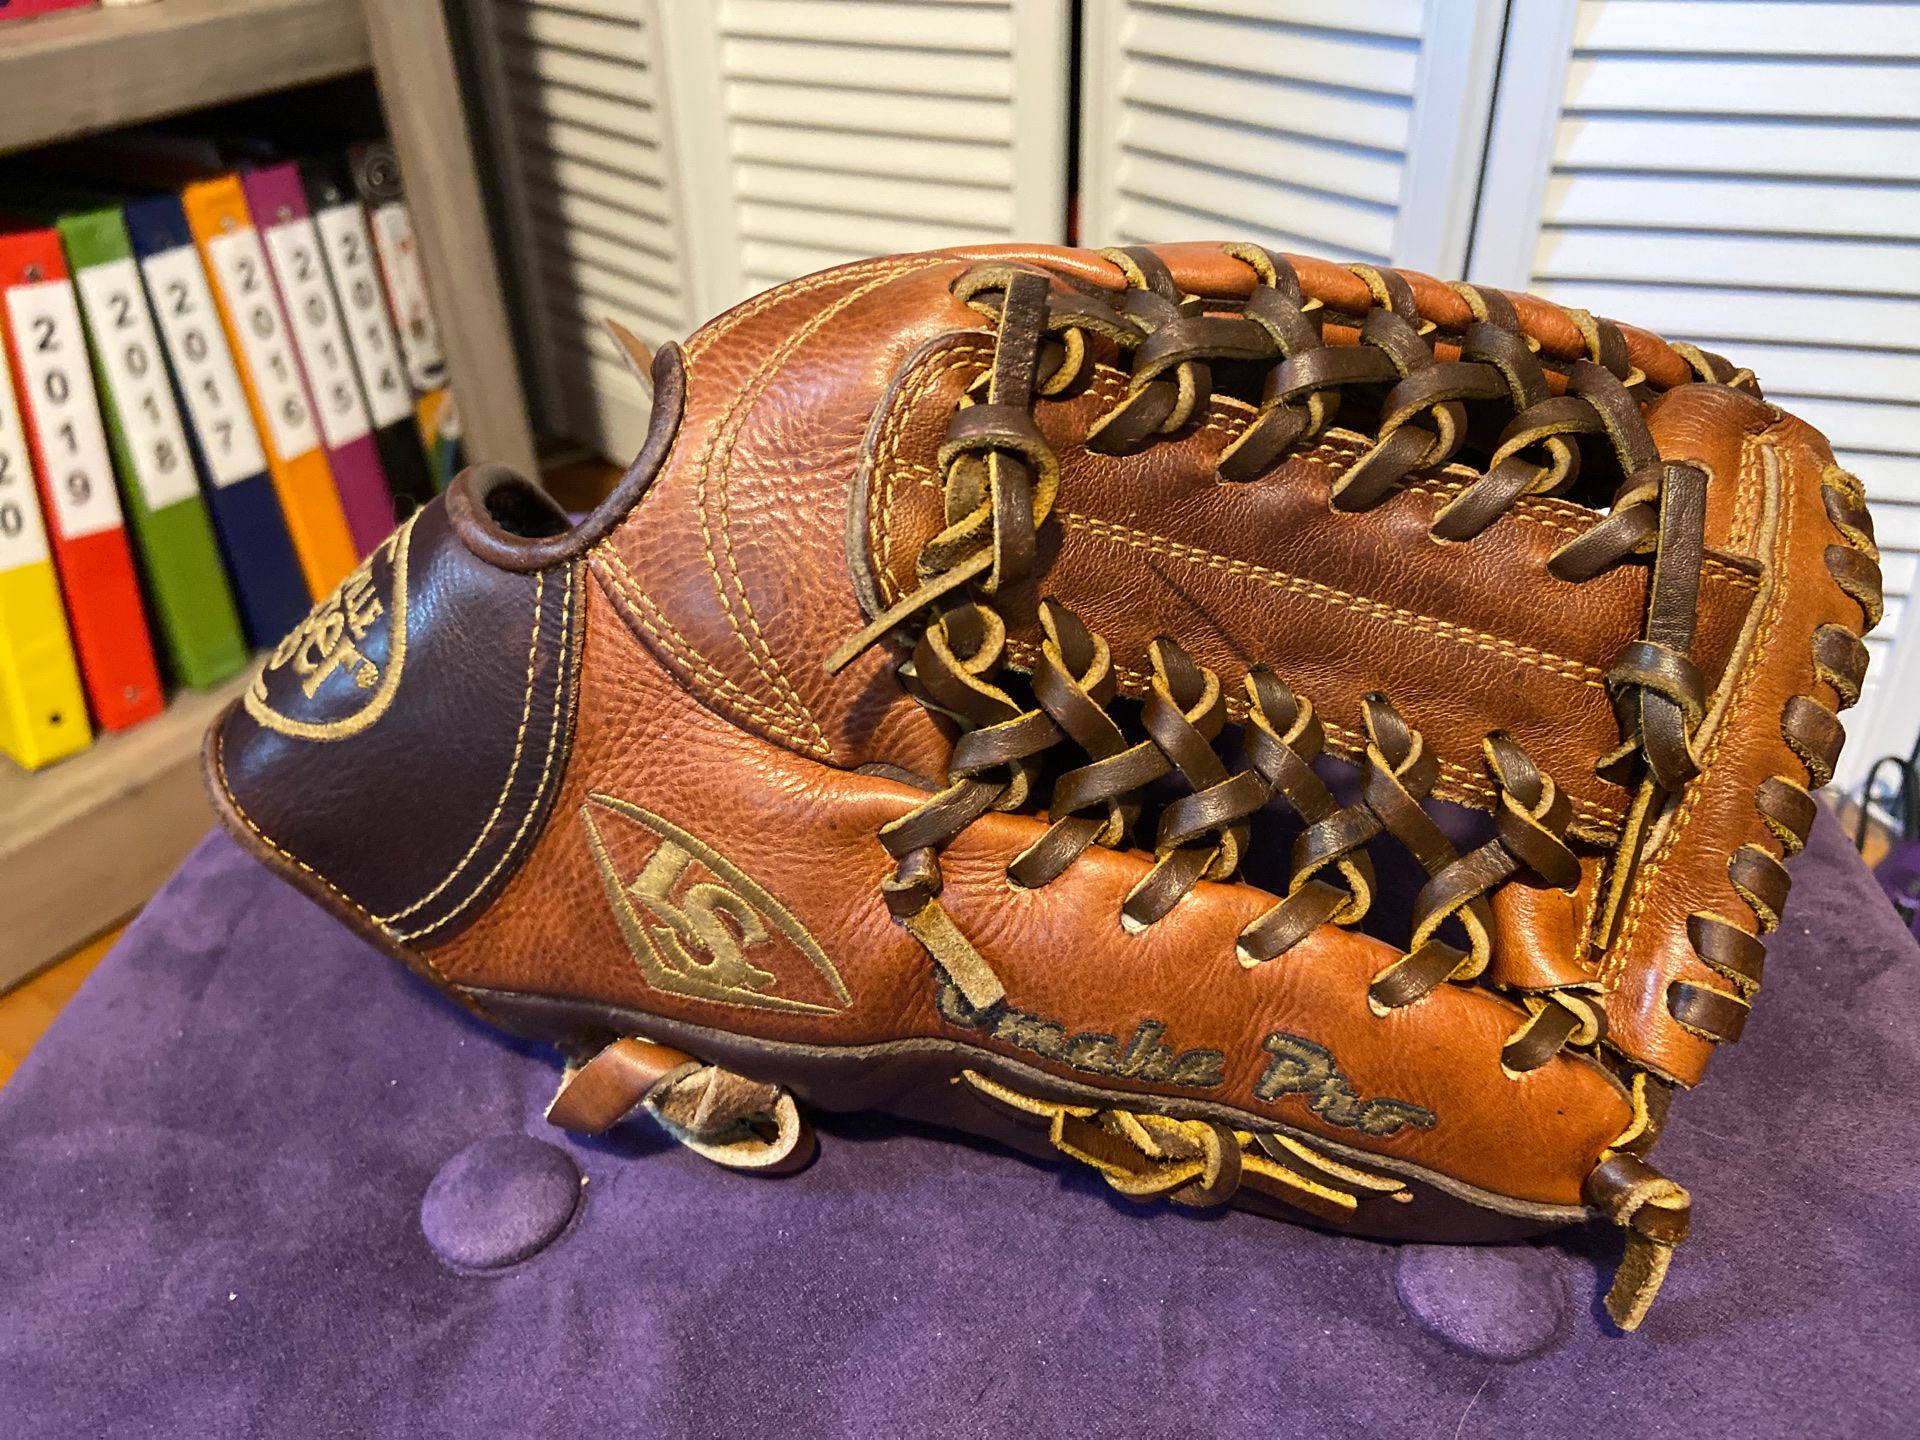 Louisville Slugger Omaha Pro 11.5” baseball glove